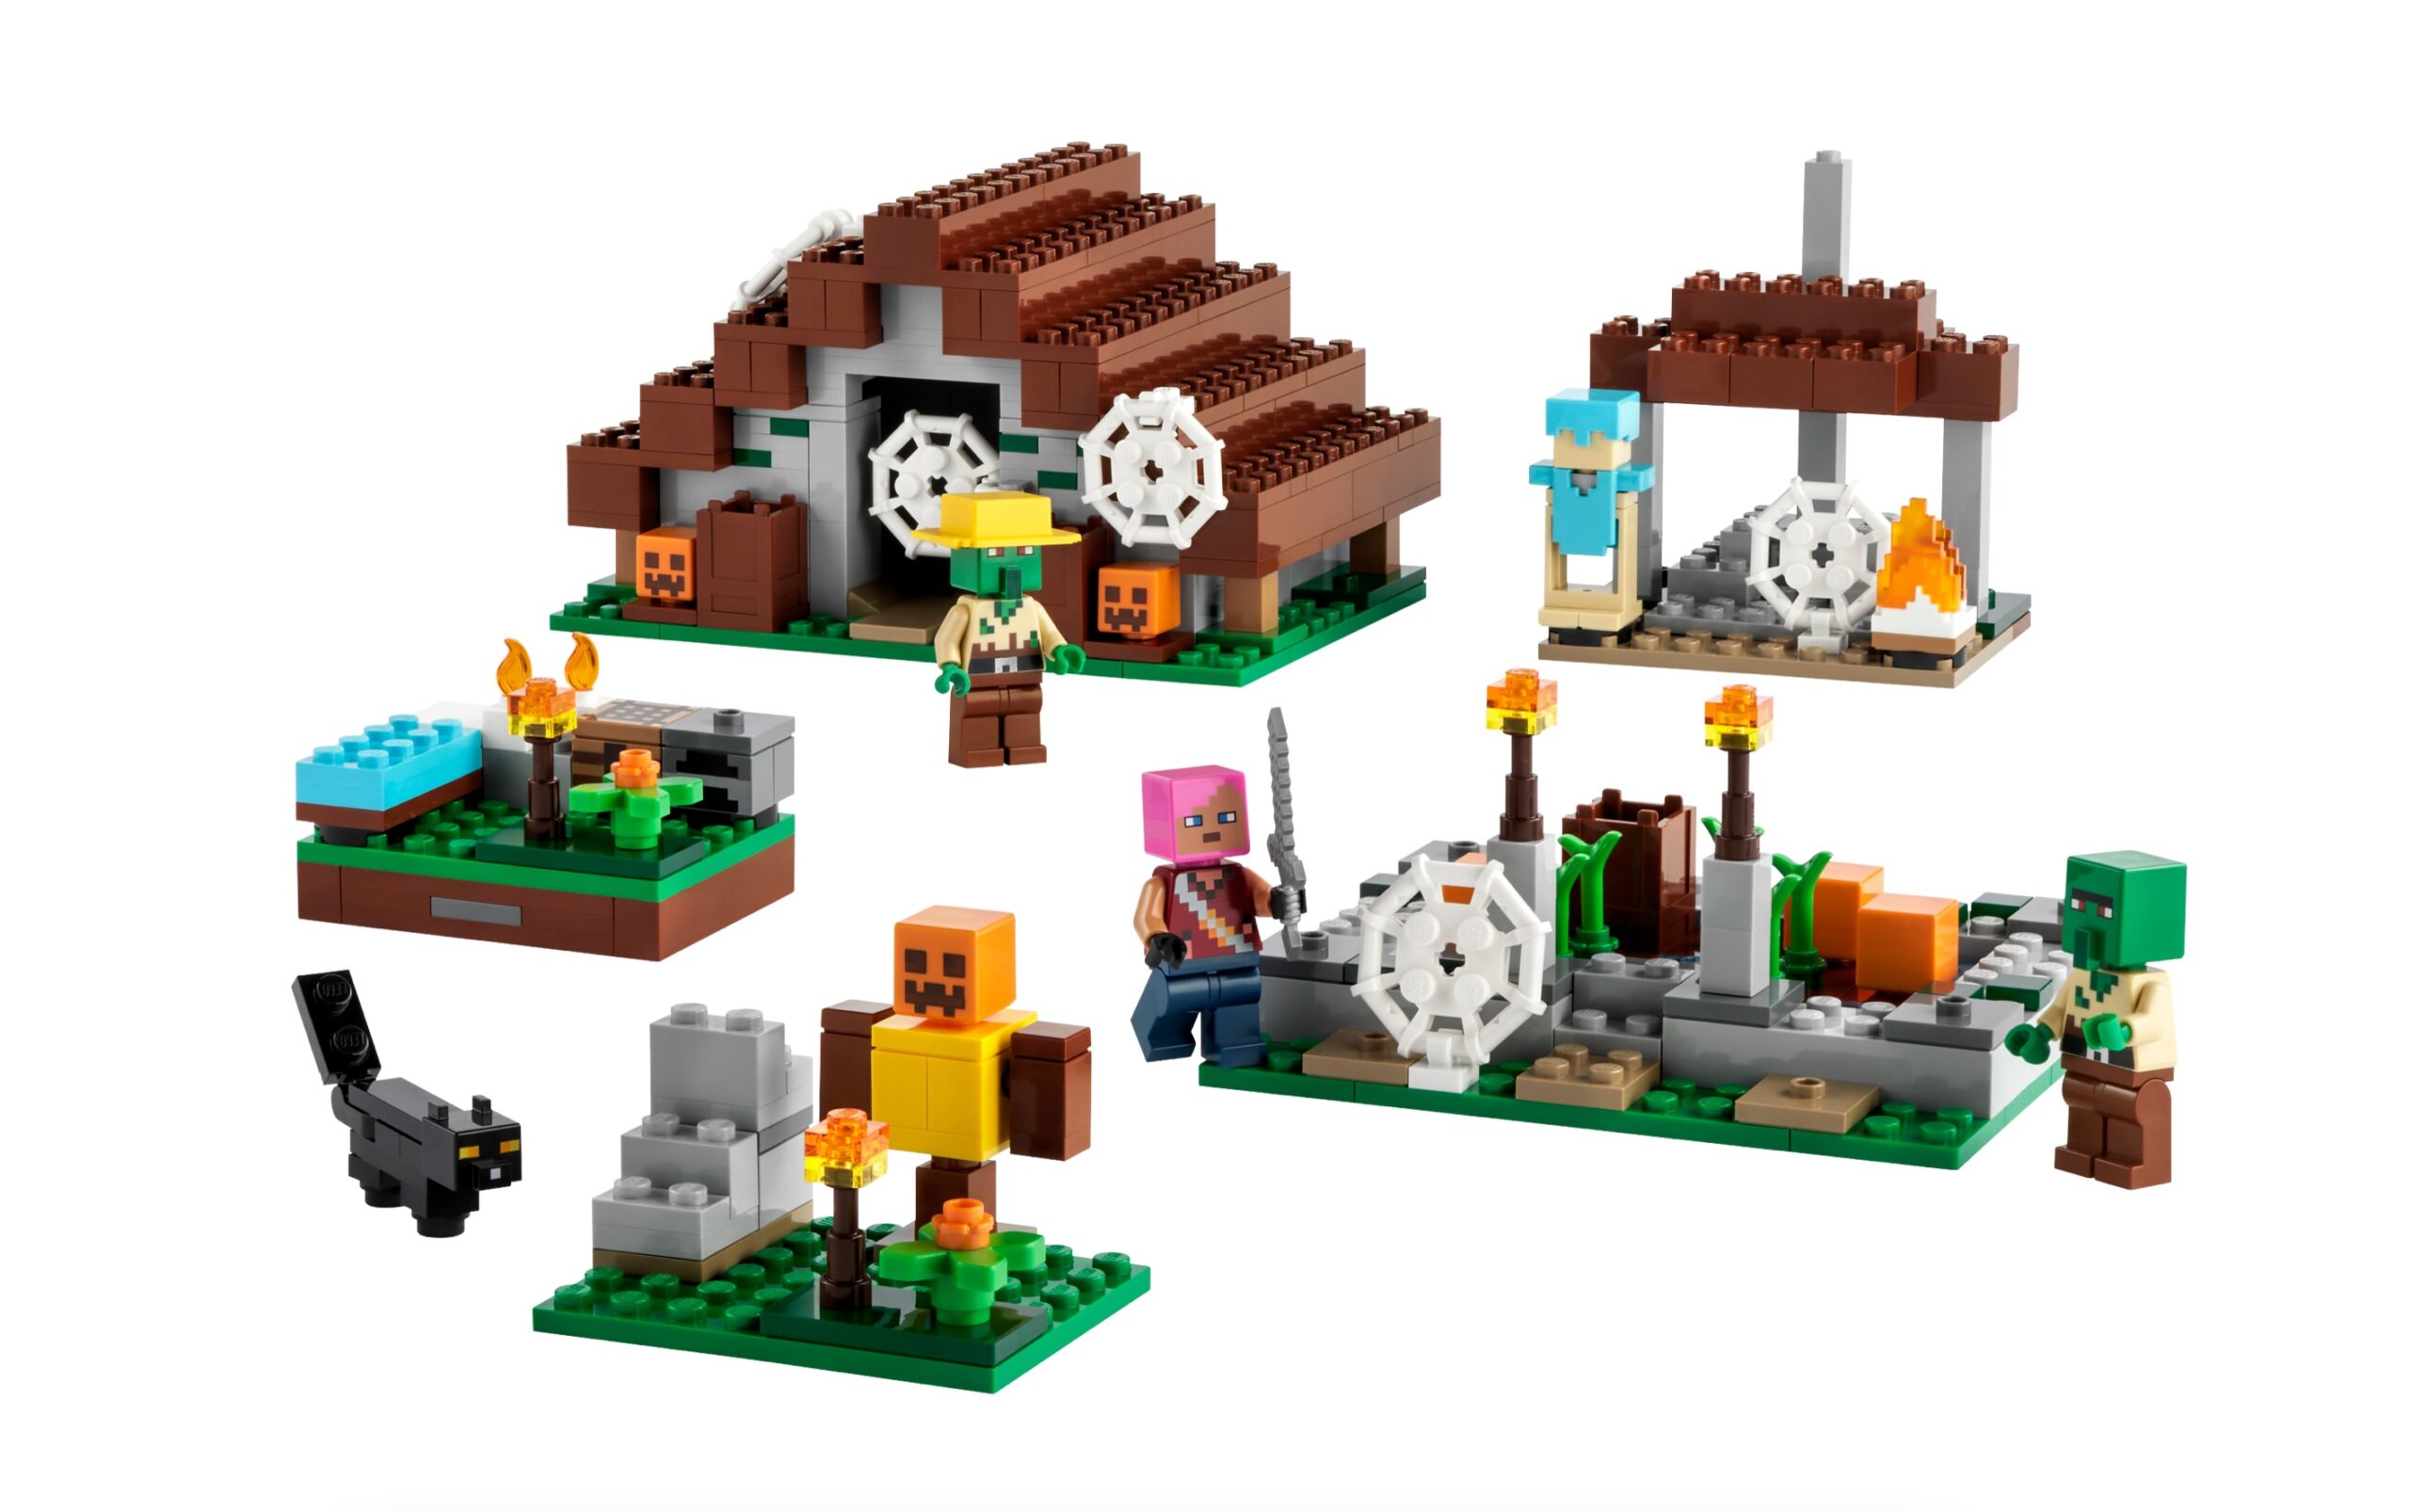 LEGO Minecraft - Das verlassene Dorf